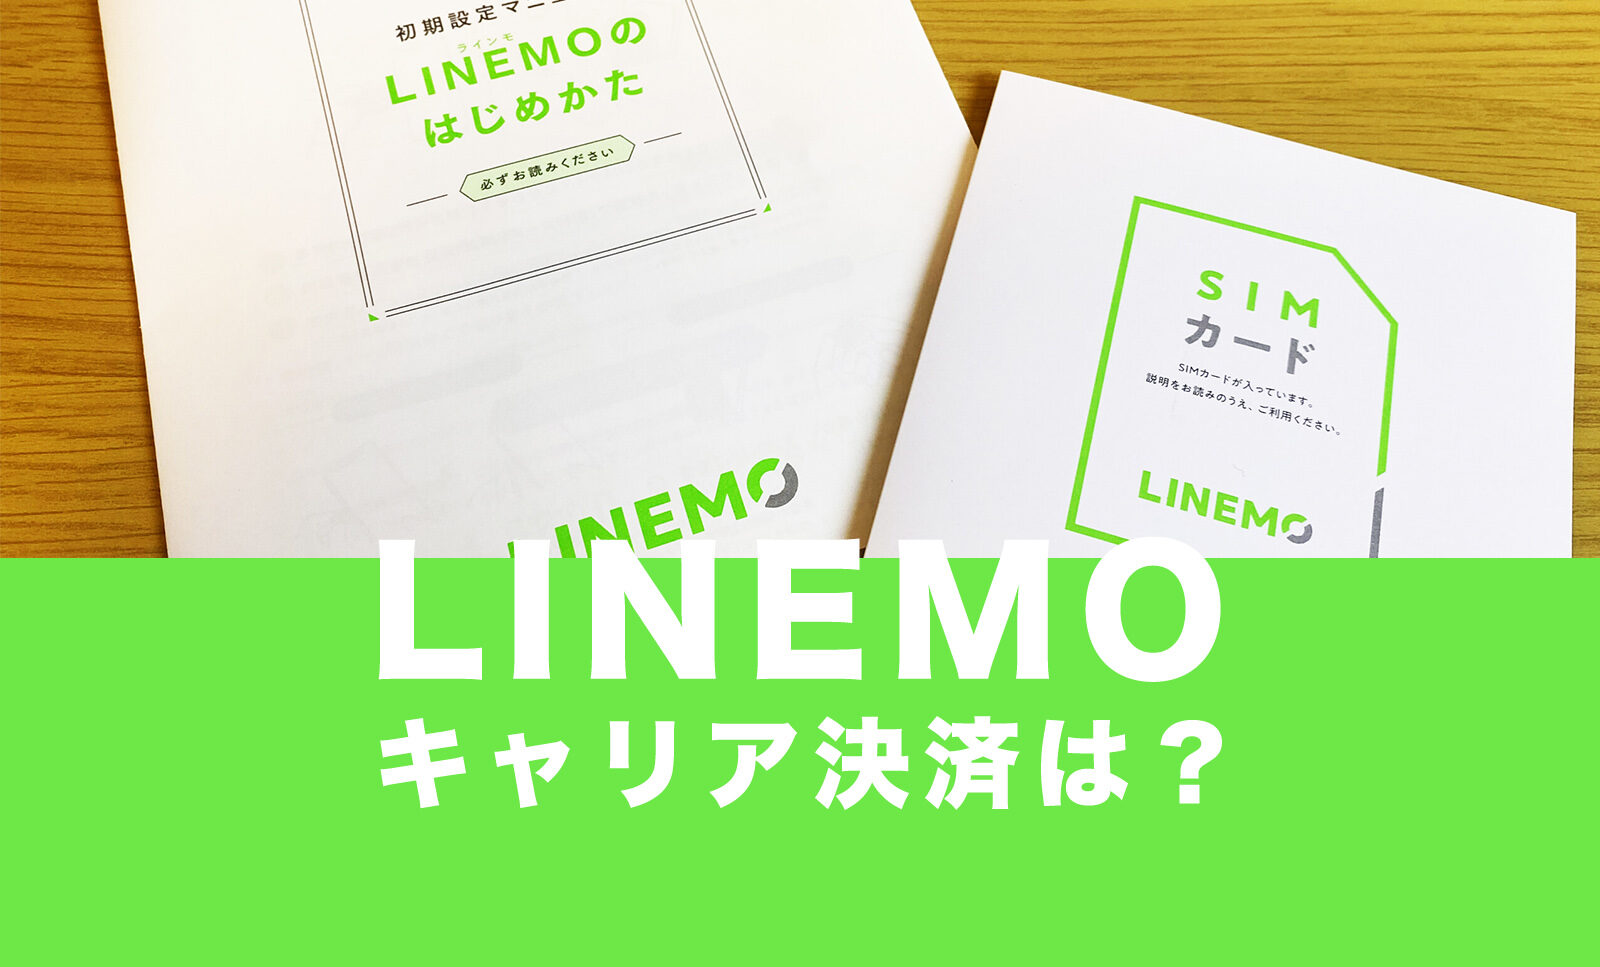 LINEMO(ラインモ)でキャリア決済やソフトバンクまとめて支払いは使える？のサムネイル画像